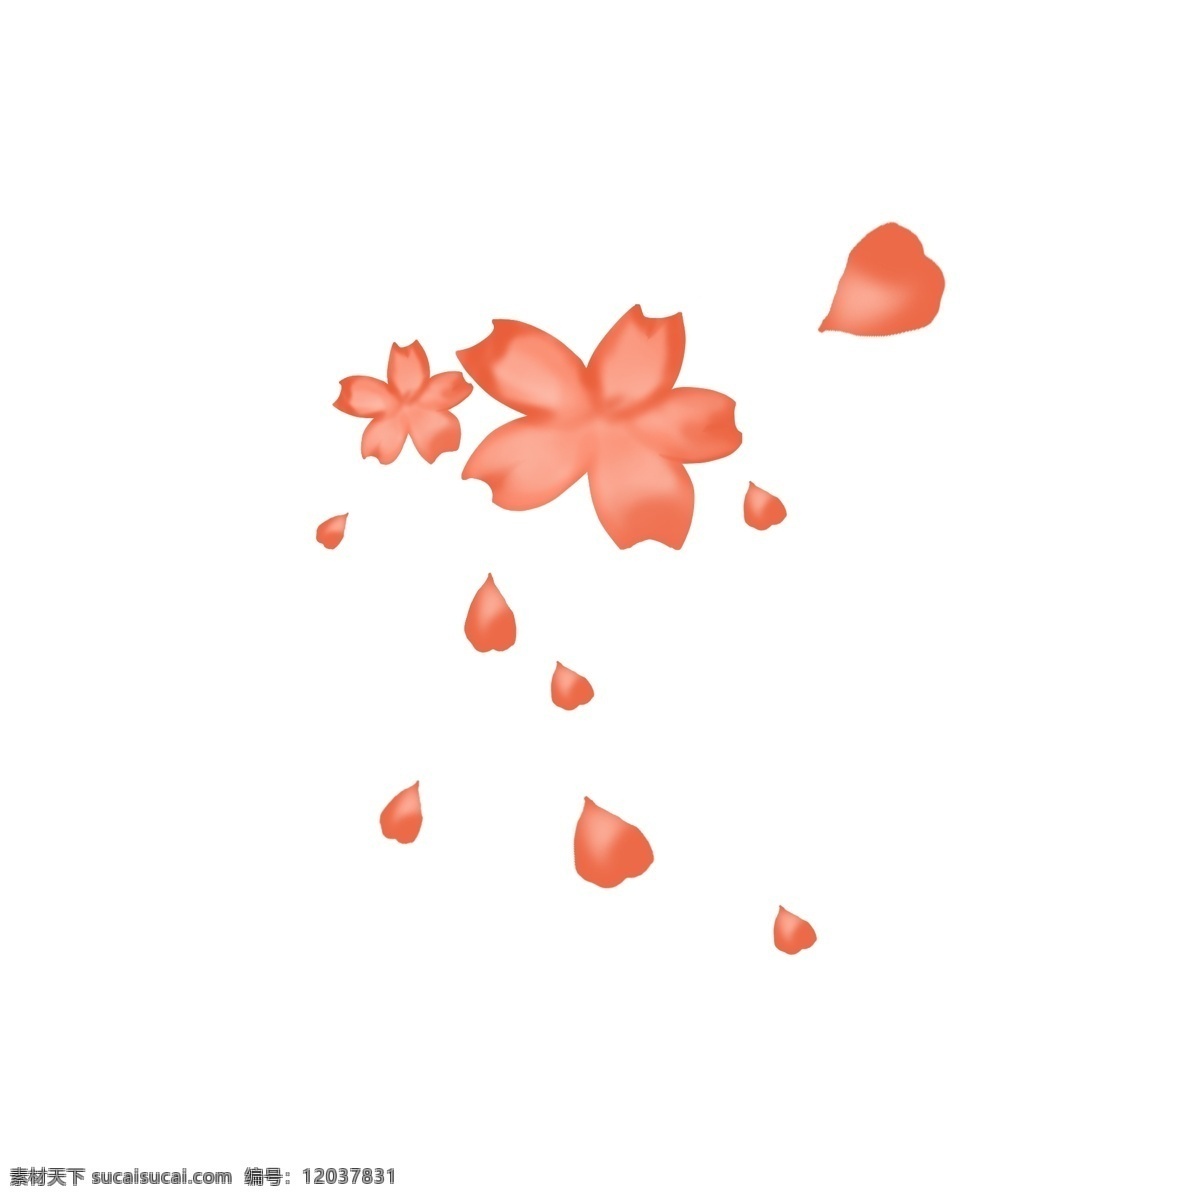 掉落 樱花 花瓣 图 正在 暖色调 暖 粉色 微风 吹 落 免扣图